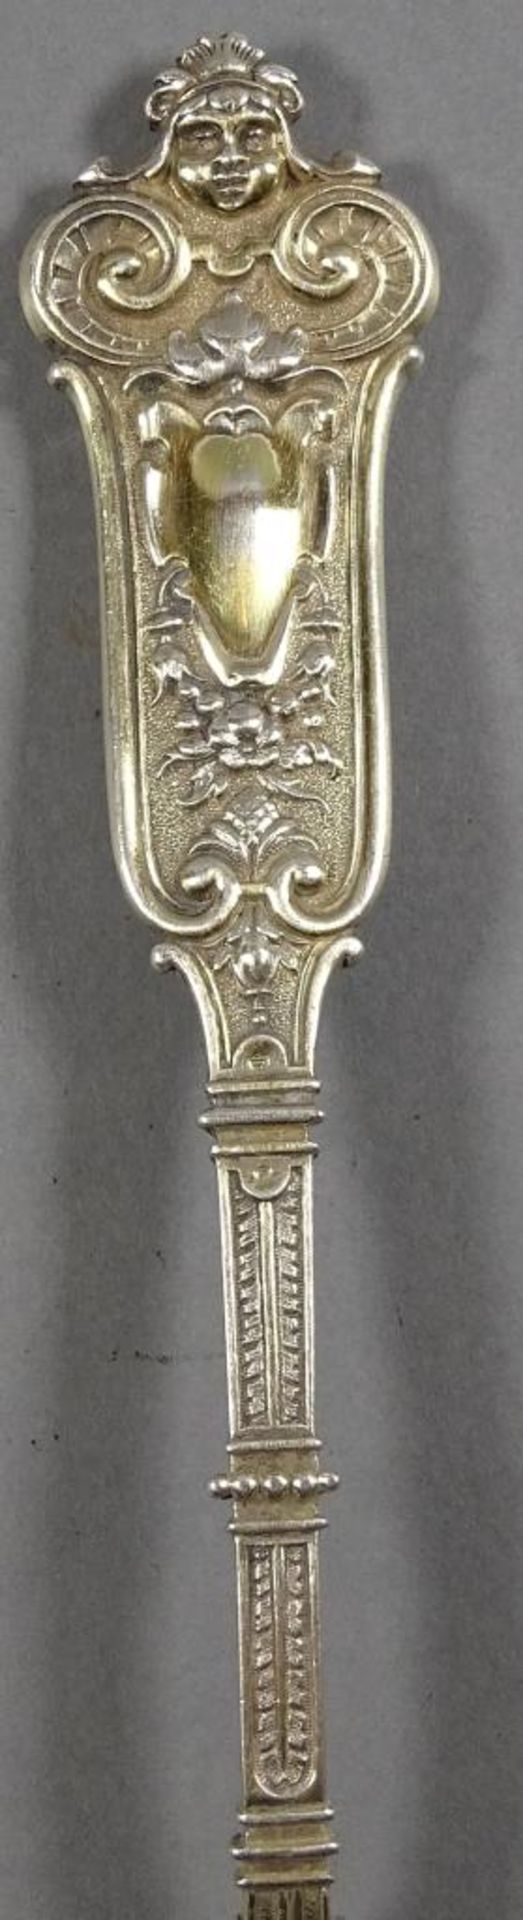 Prunklöffel,Silber -800-,leicht vergoldet,L-20cm, 82,6gr - Bild 3 aus 5